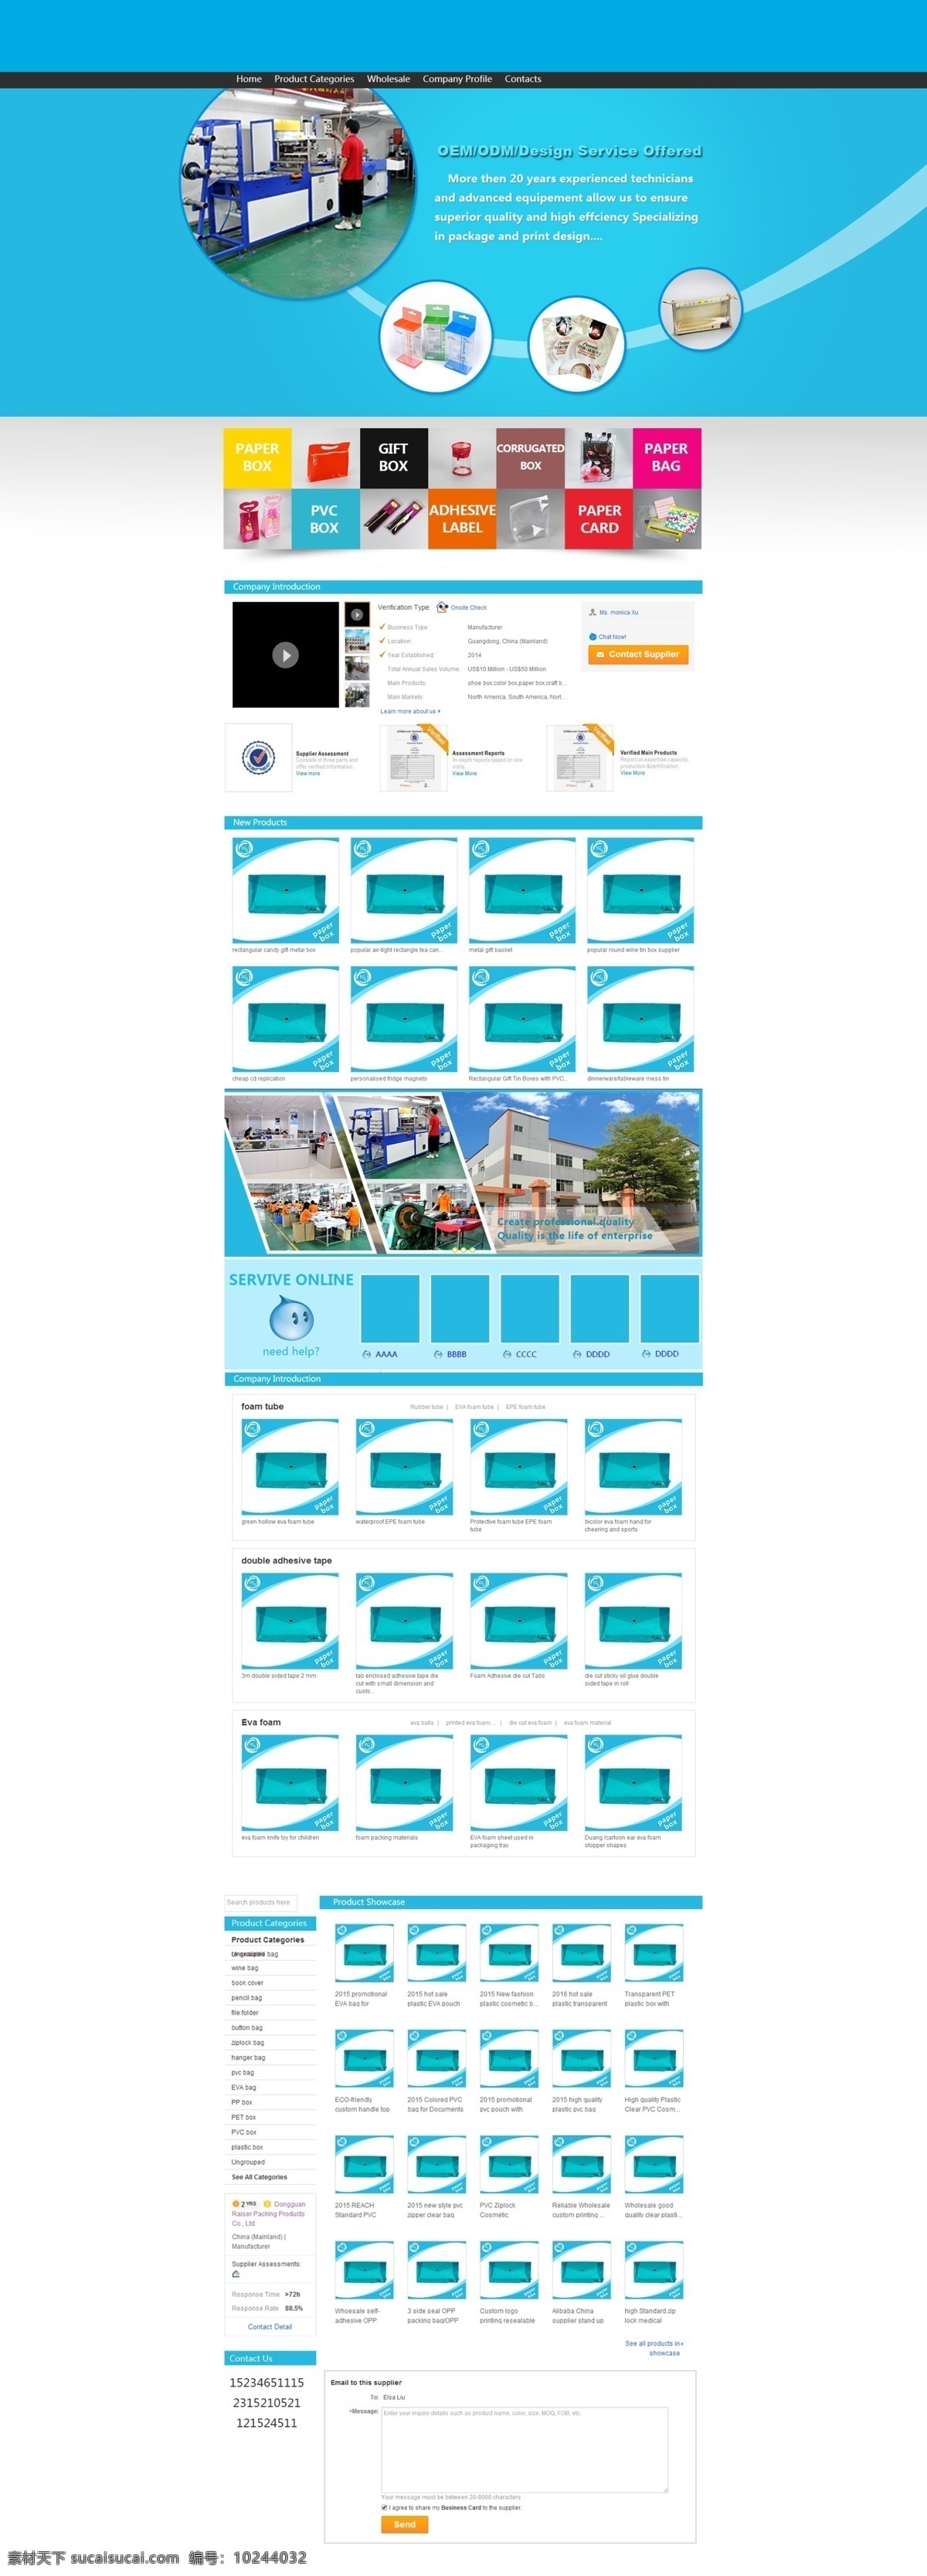 通用 网页 包装印刷 材料 阿里 国际 站 首页 模板 包装 分类 创意海报 大气 印刷行业 装修模板 产品分类 印刷 装修 创意旺旺展示 滚动图 蓝色风格 白色